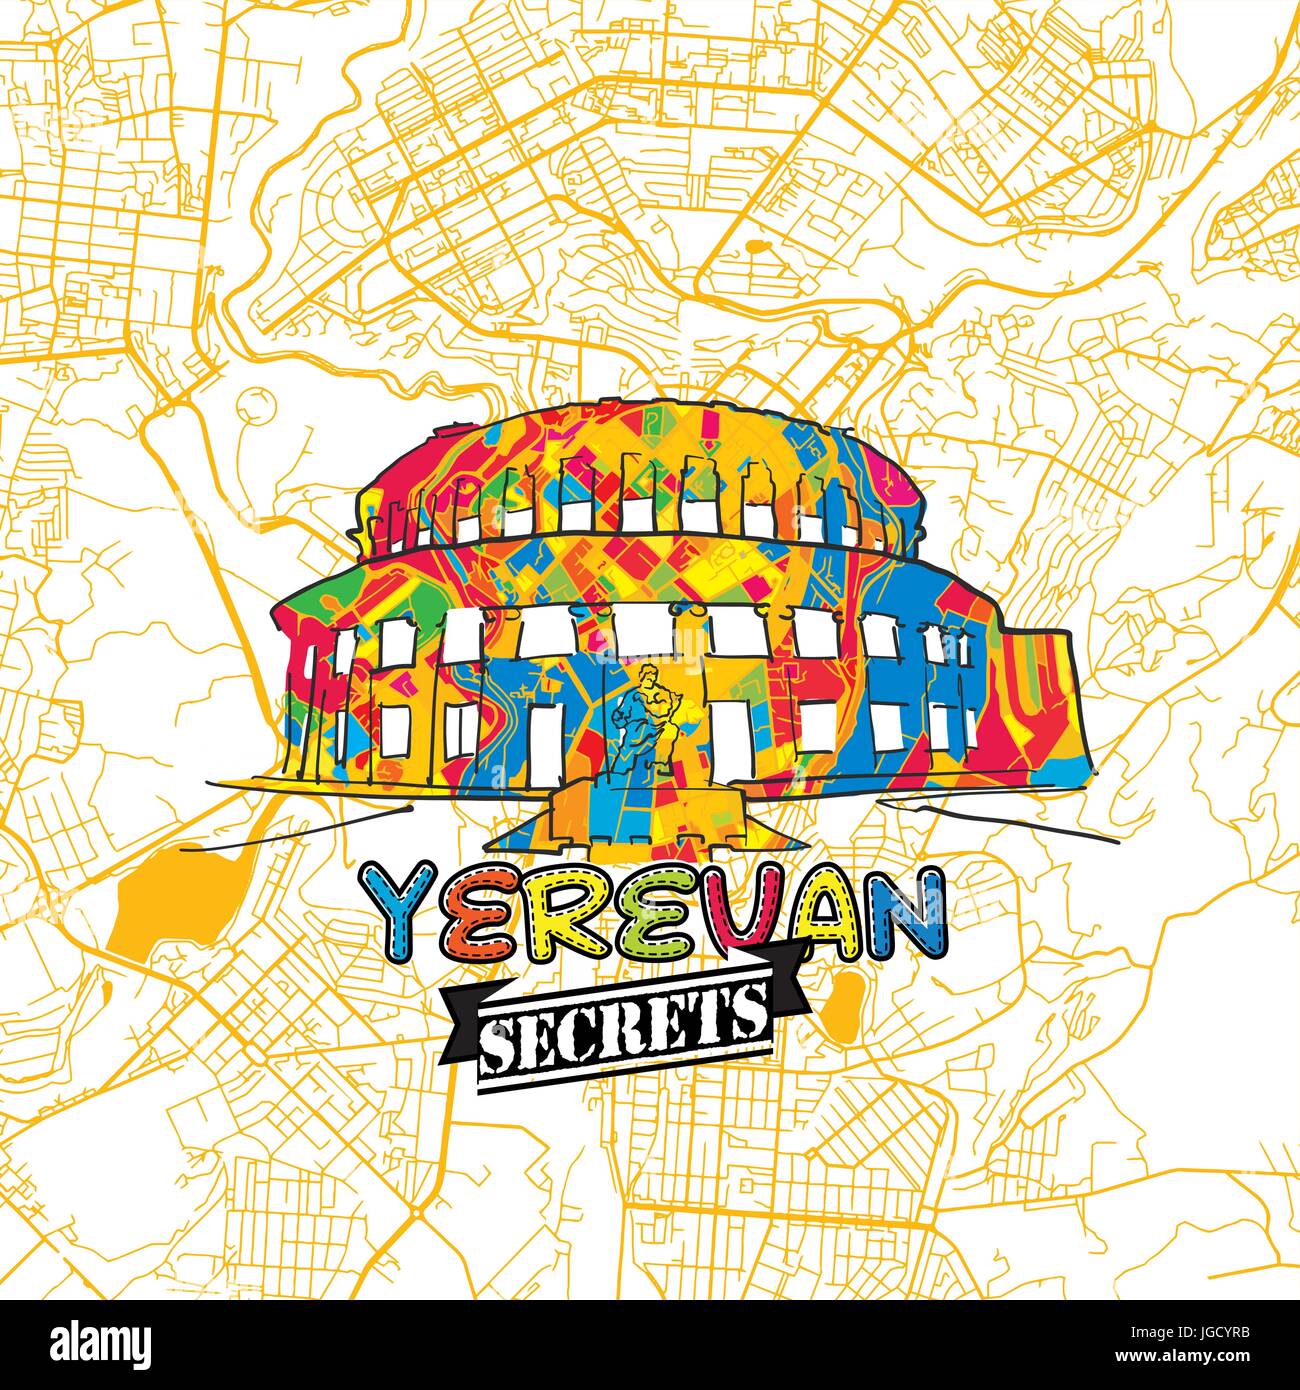 Yerevan Reise Geheimnisse Art Map für die Zuordnung von Experten und Reiseführer. Handgemachte Stadt Logo, Typo-Abzeichen und Hand gezeichnete Vektor-Bild an der Spitze sind gruppiert eine Stock Vektor